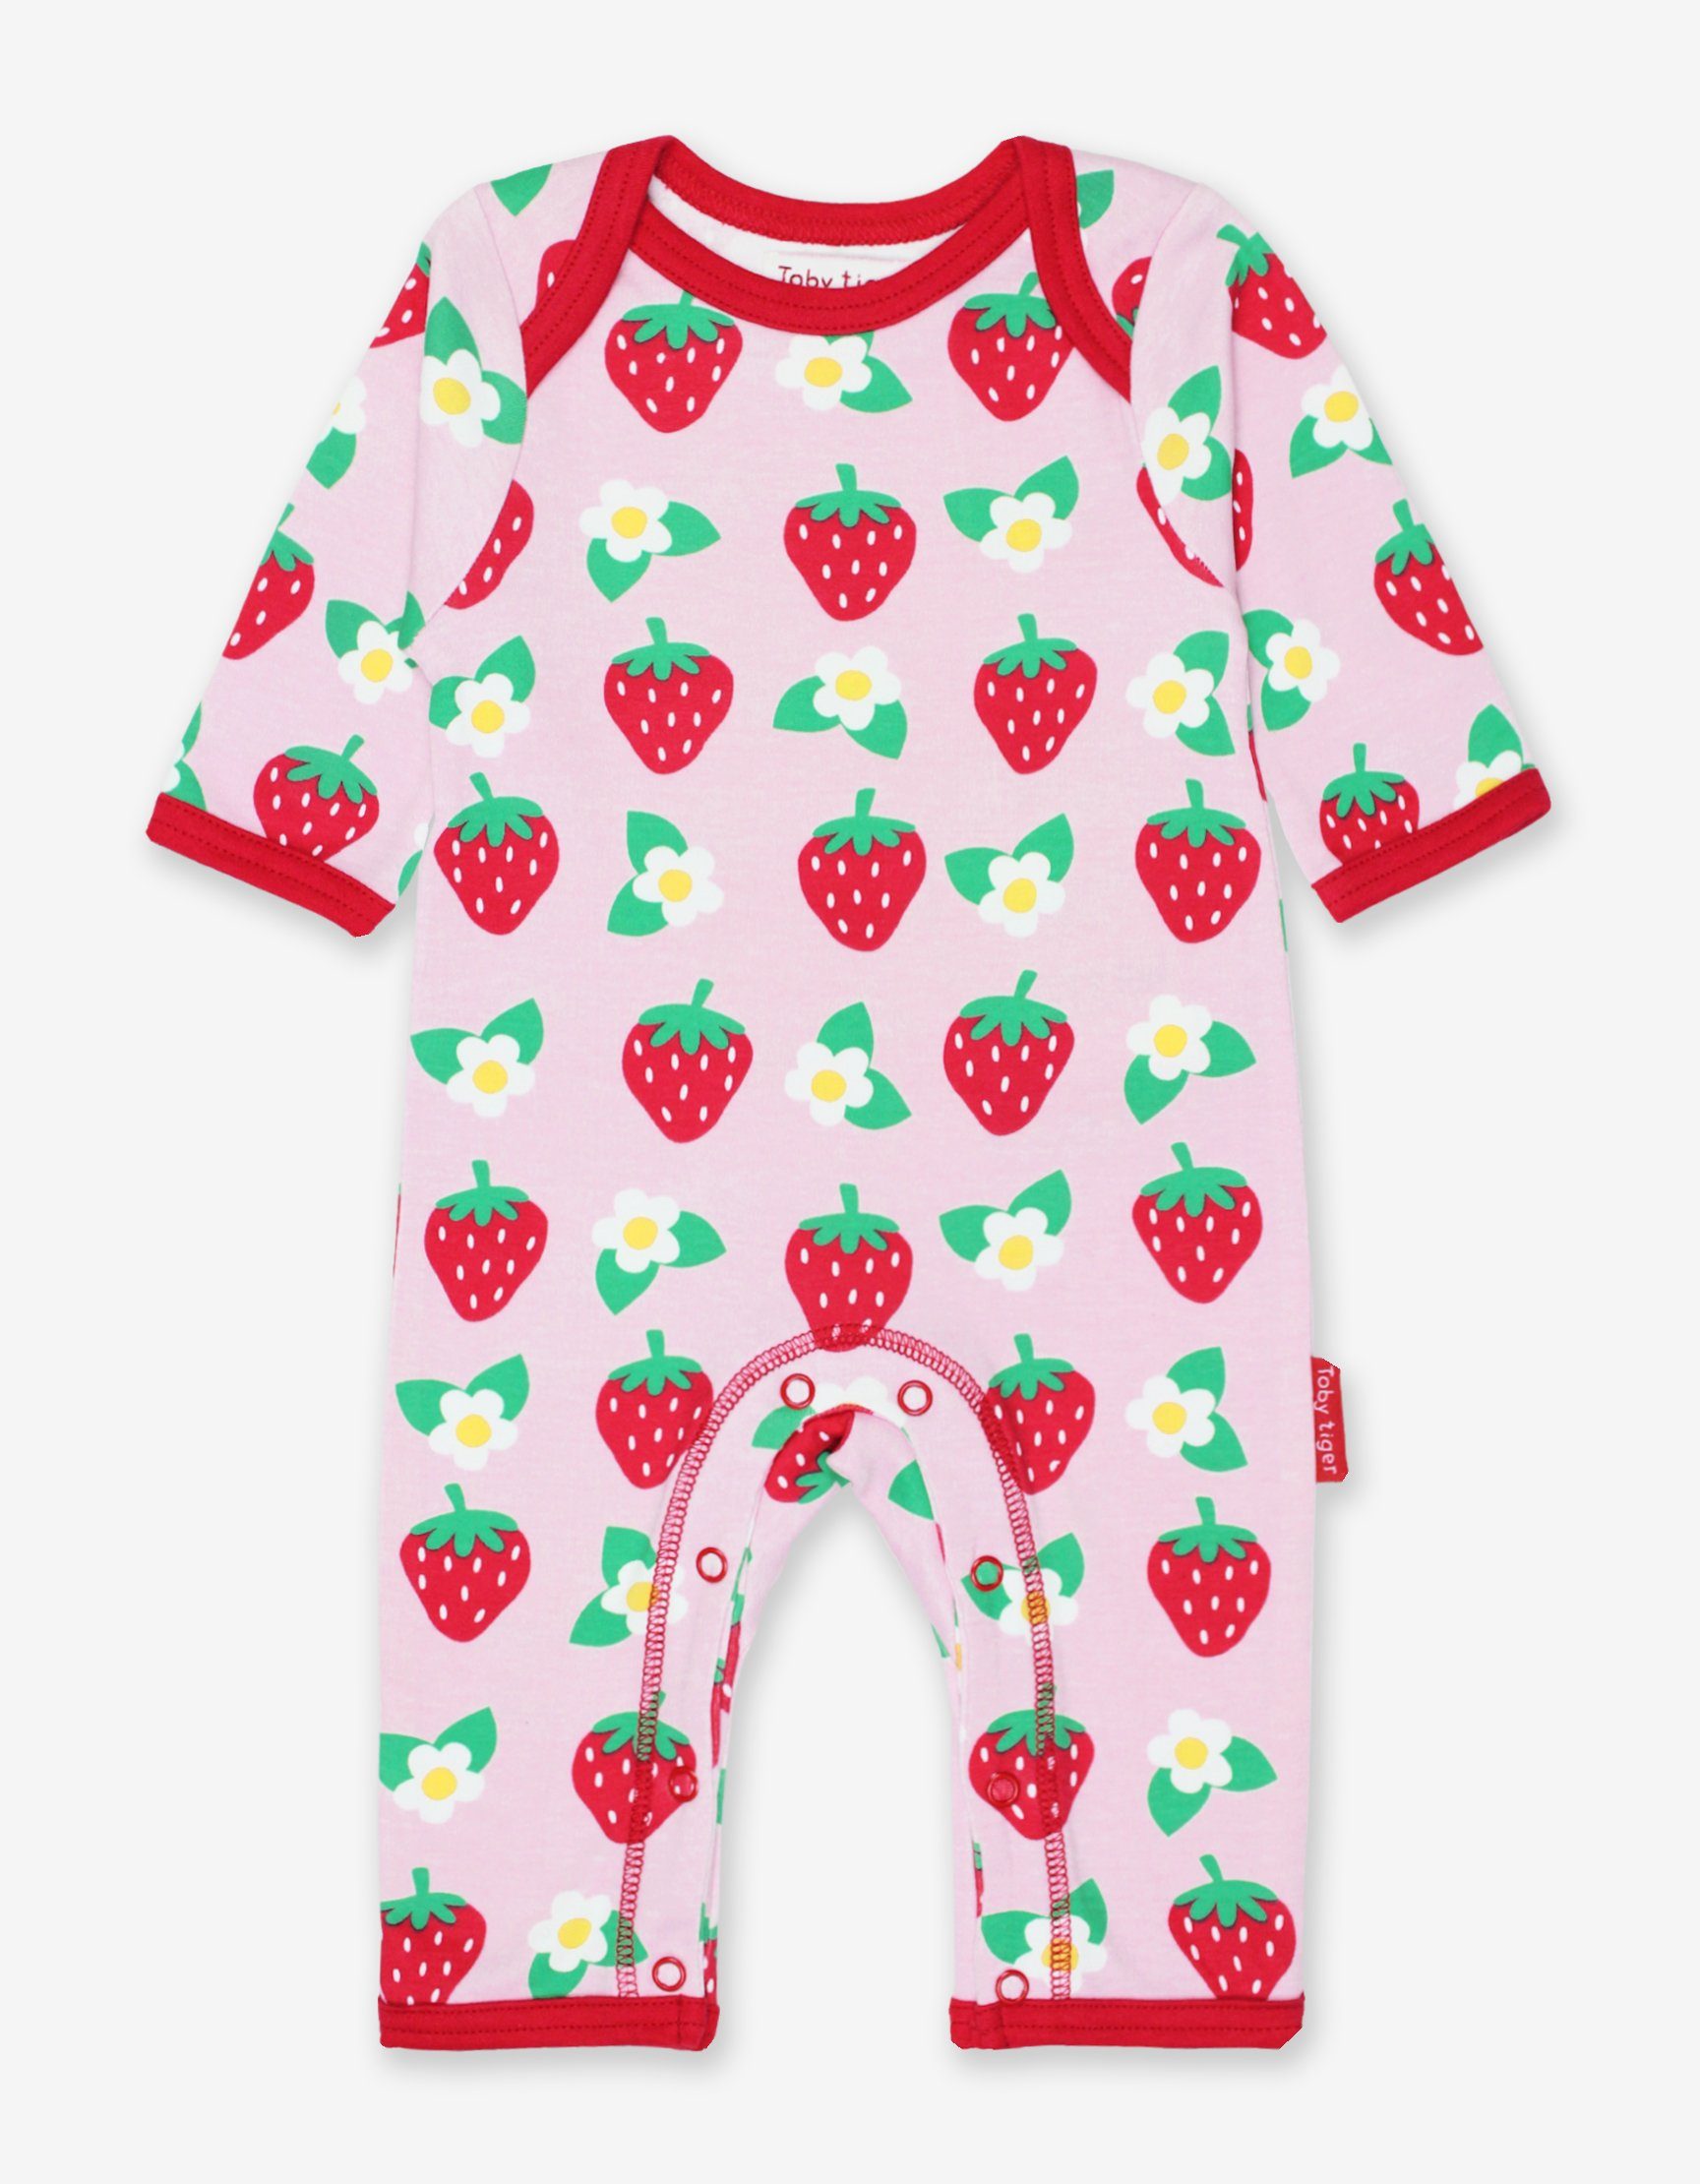 Blumen Schlafanzug Print Schlafanzug mit Erdbeer Toby Tiger und